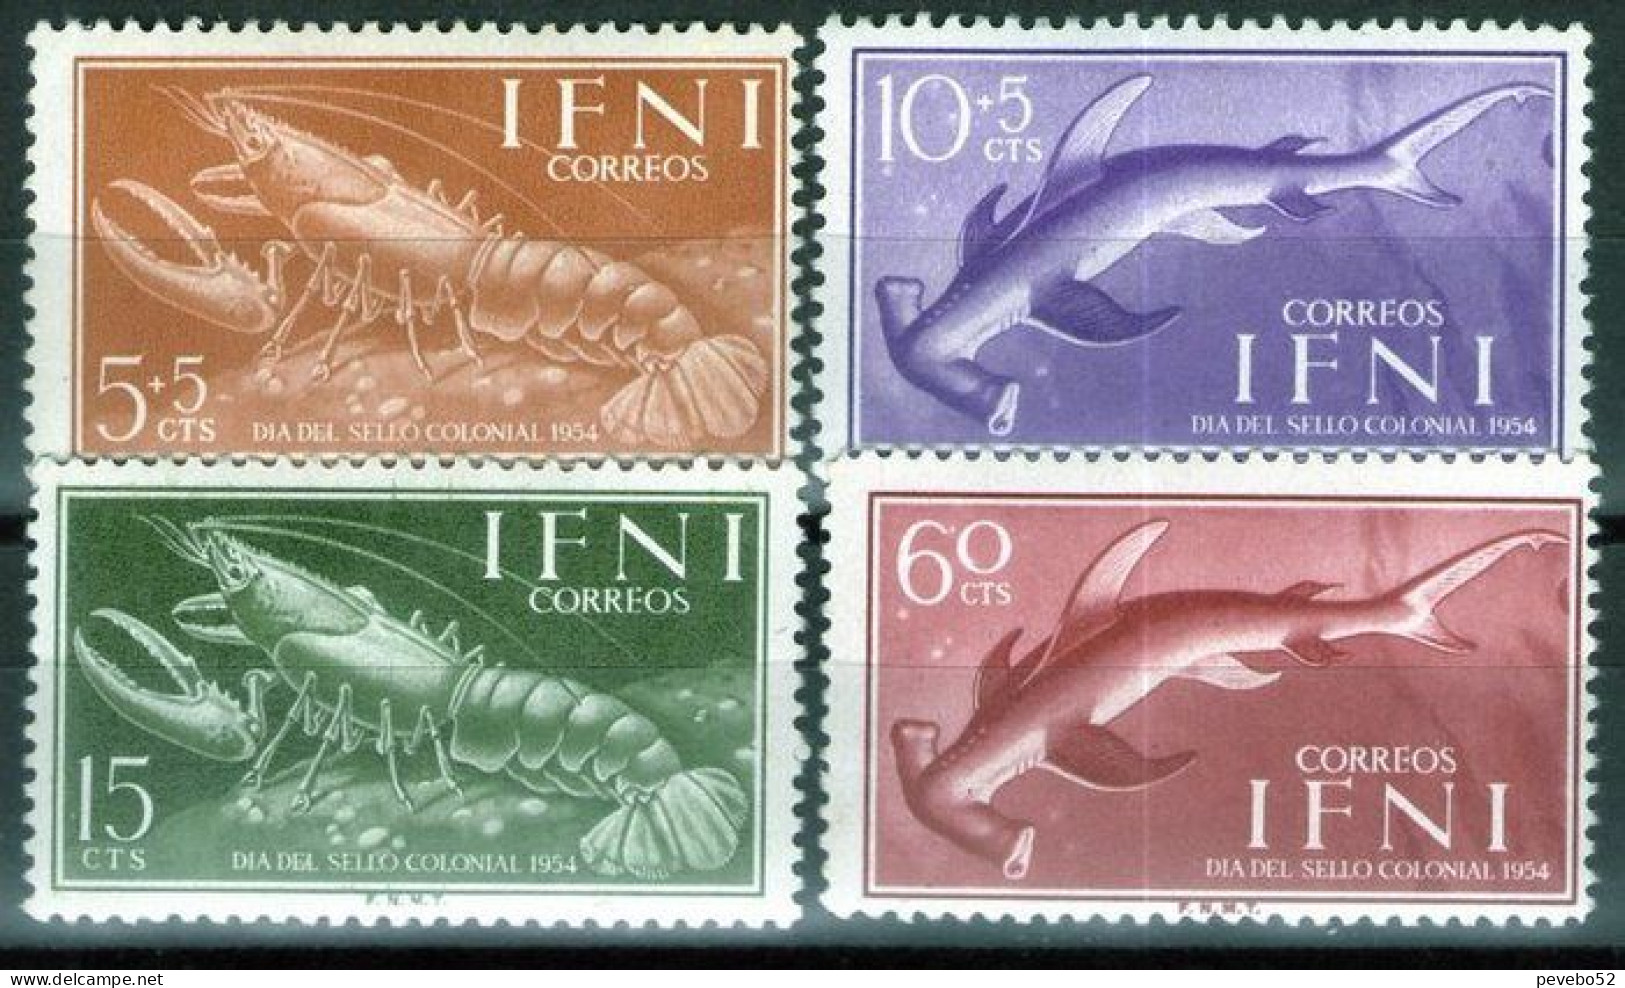 SPAINISH IFNI 1954 - Stamp Day - Marine Life MNH - Ifni